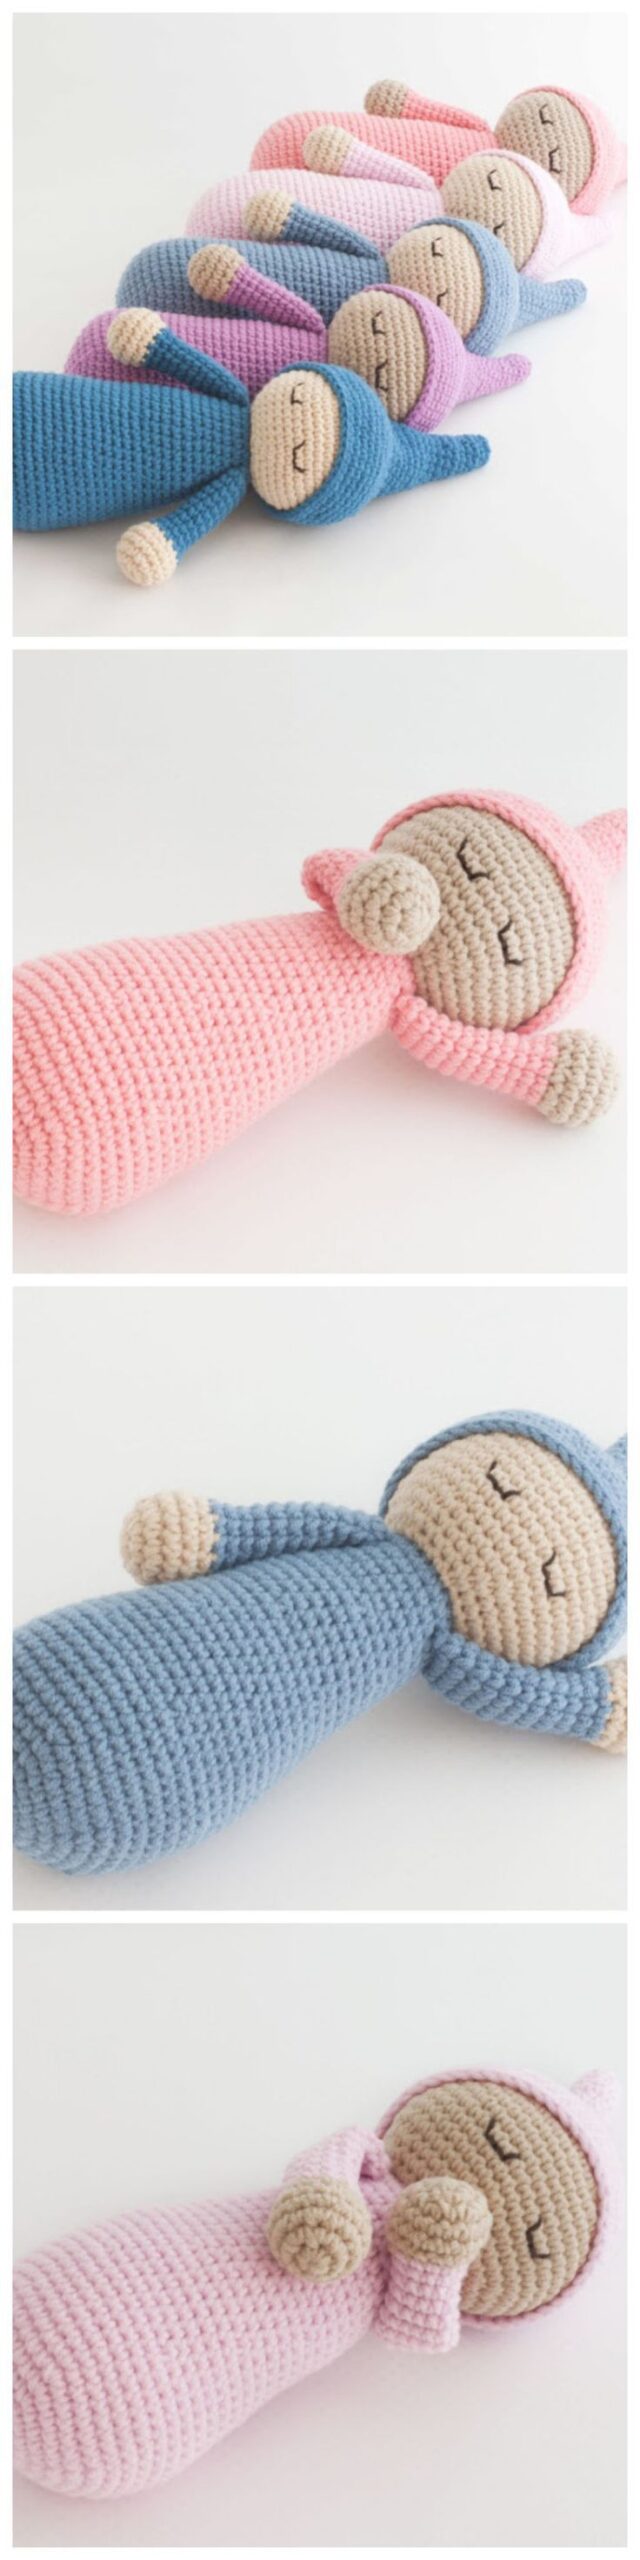 Crochet Sleepyhead Doll – Free Pattern